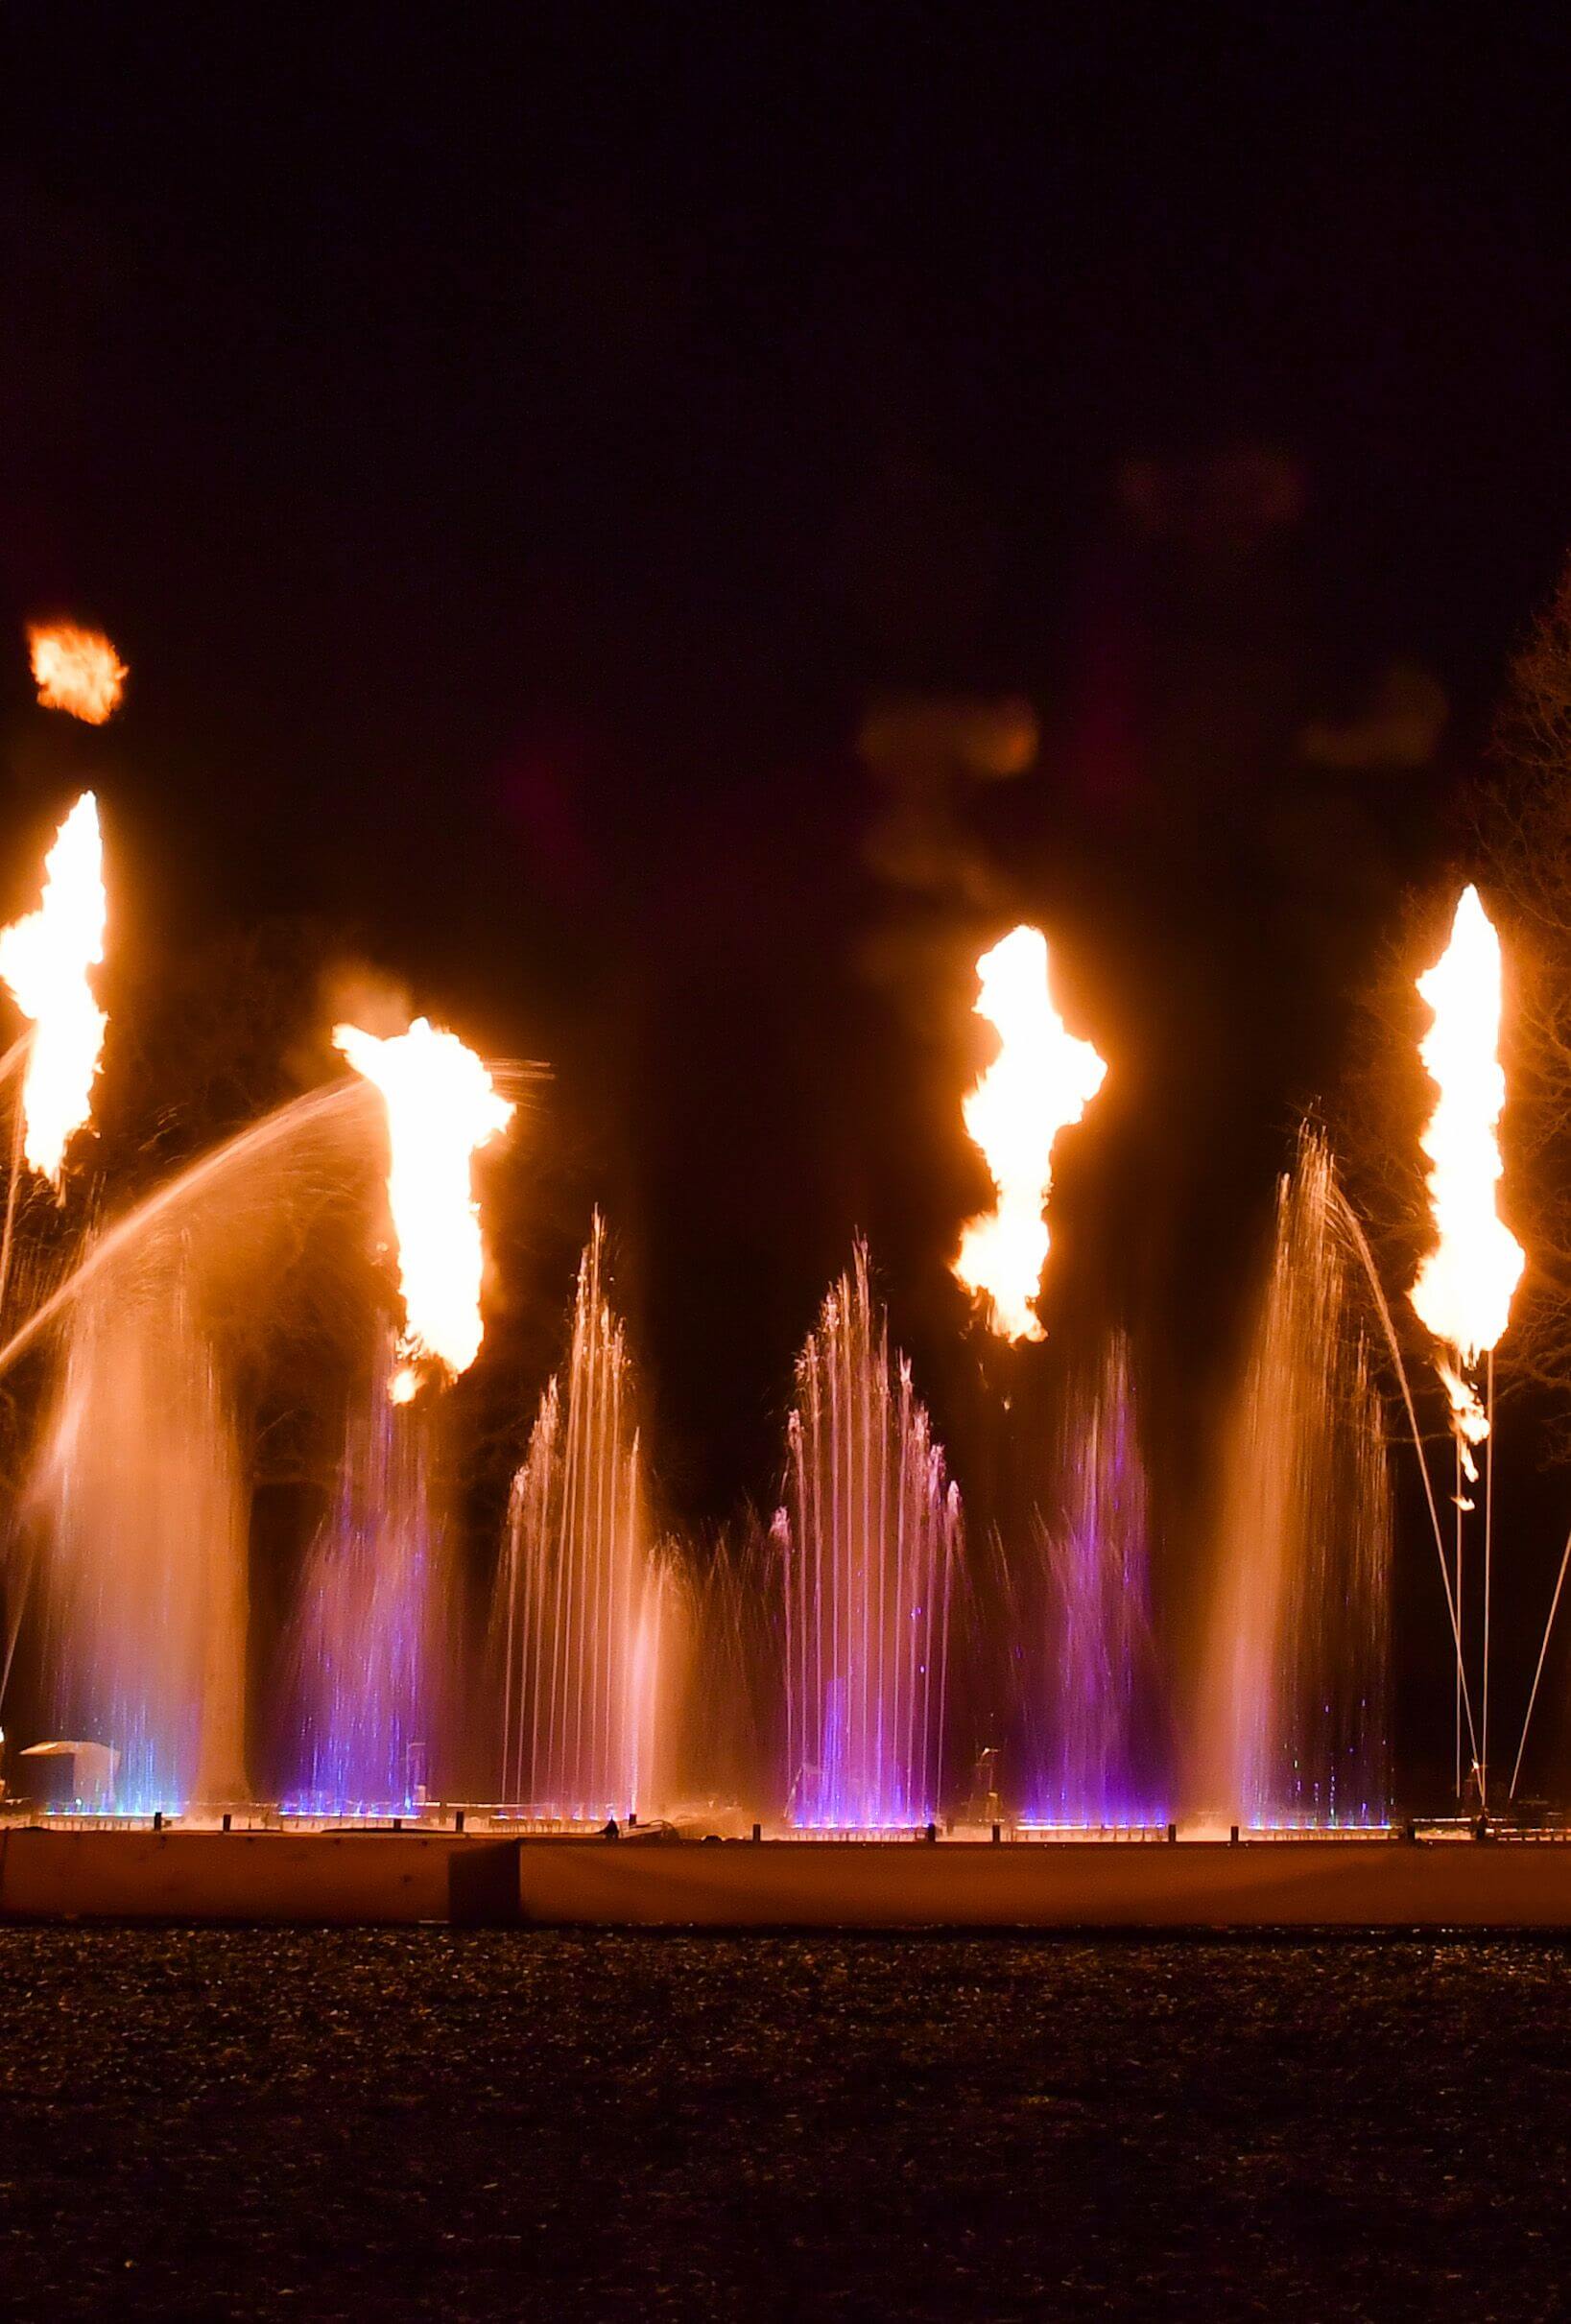 Europe Évènement - Photo de flammes avec des jets d'eau de couleur violet derrière